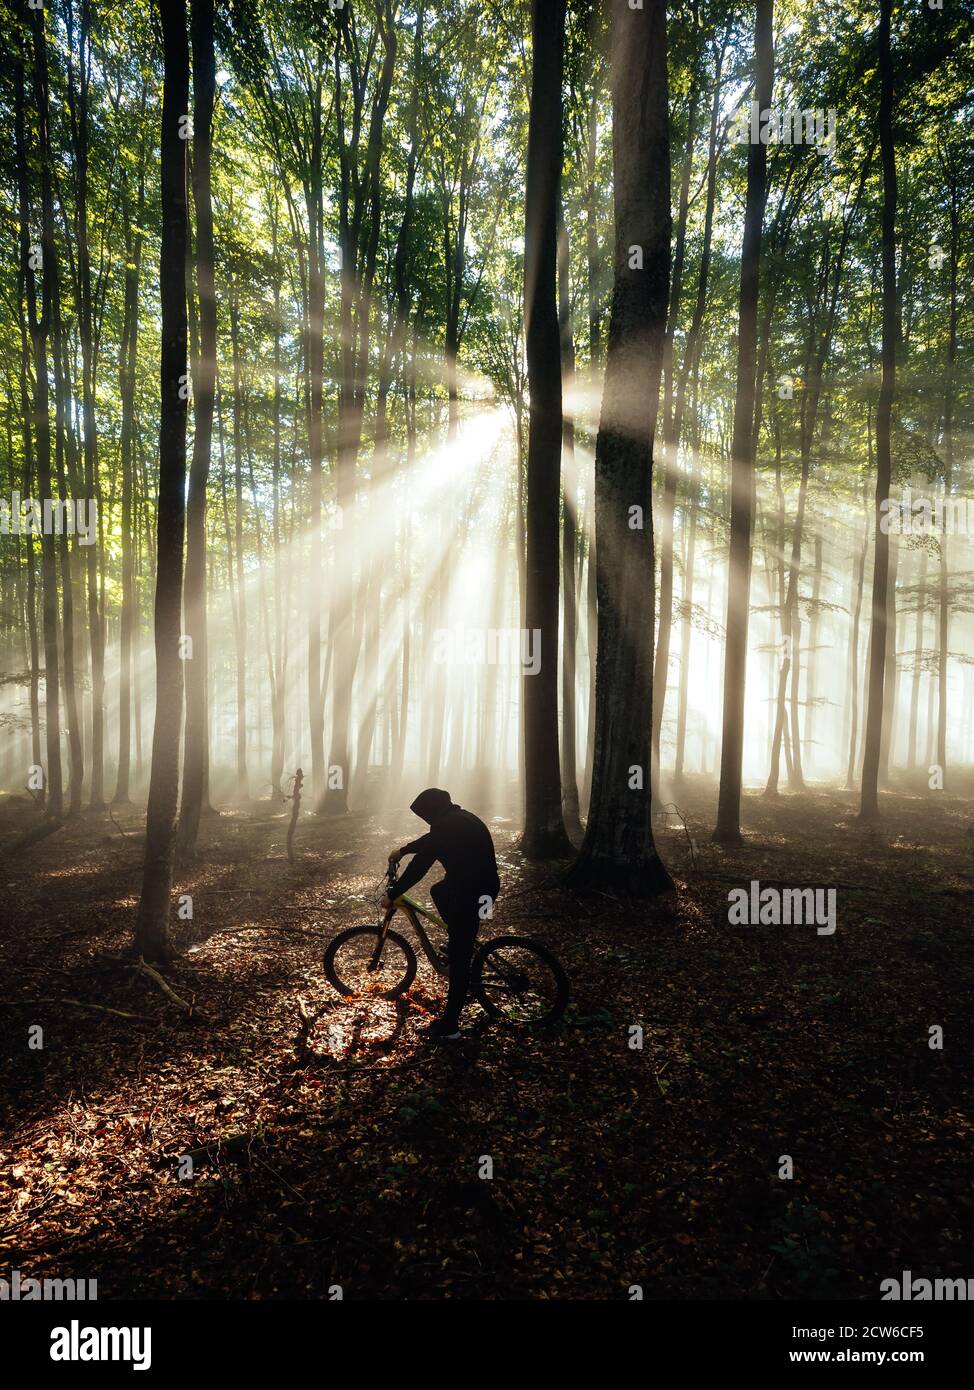 Les cyclistes de vélo de montagne s'entraîner dans la forêt sauvage de foggy. Rayons du soleil dans la nature de la forêt. Poutres de soleil pittoresques dans les bois Banque D'Images